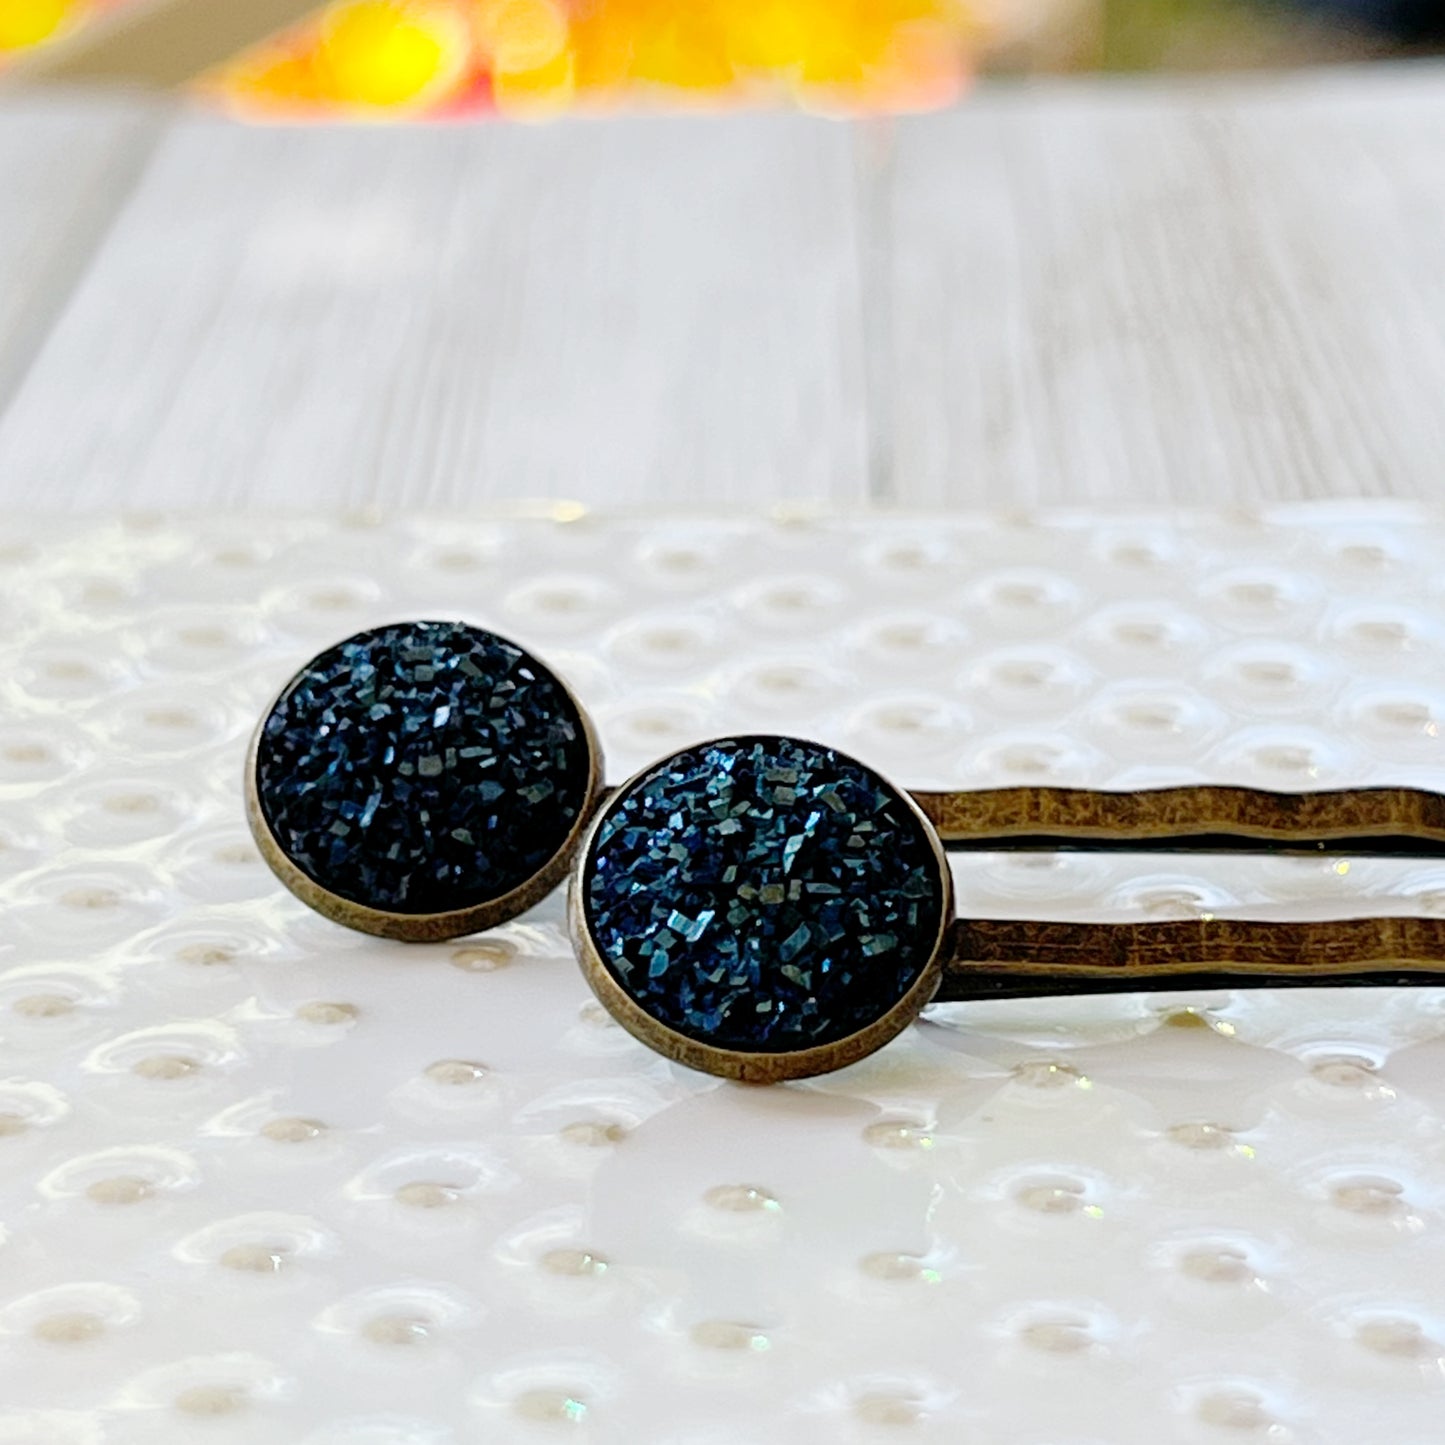 Cobalt Blue Druzy Brass Hair Pins: Elegant & Bold Accessories